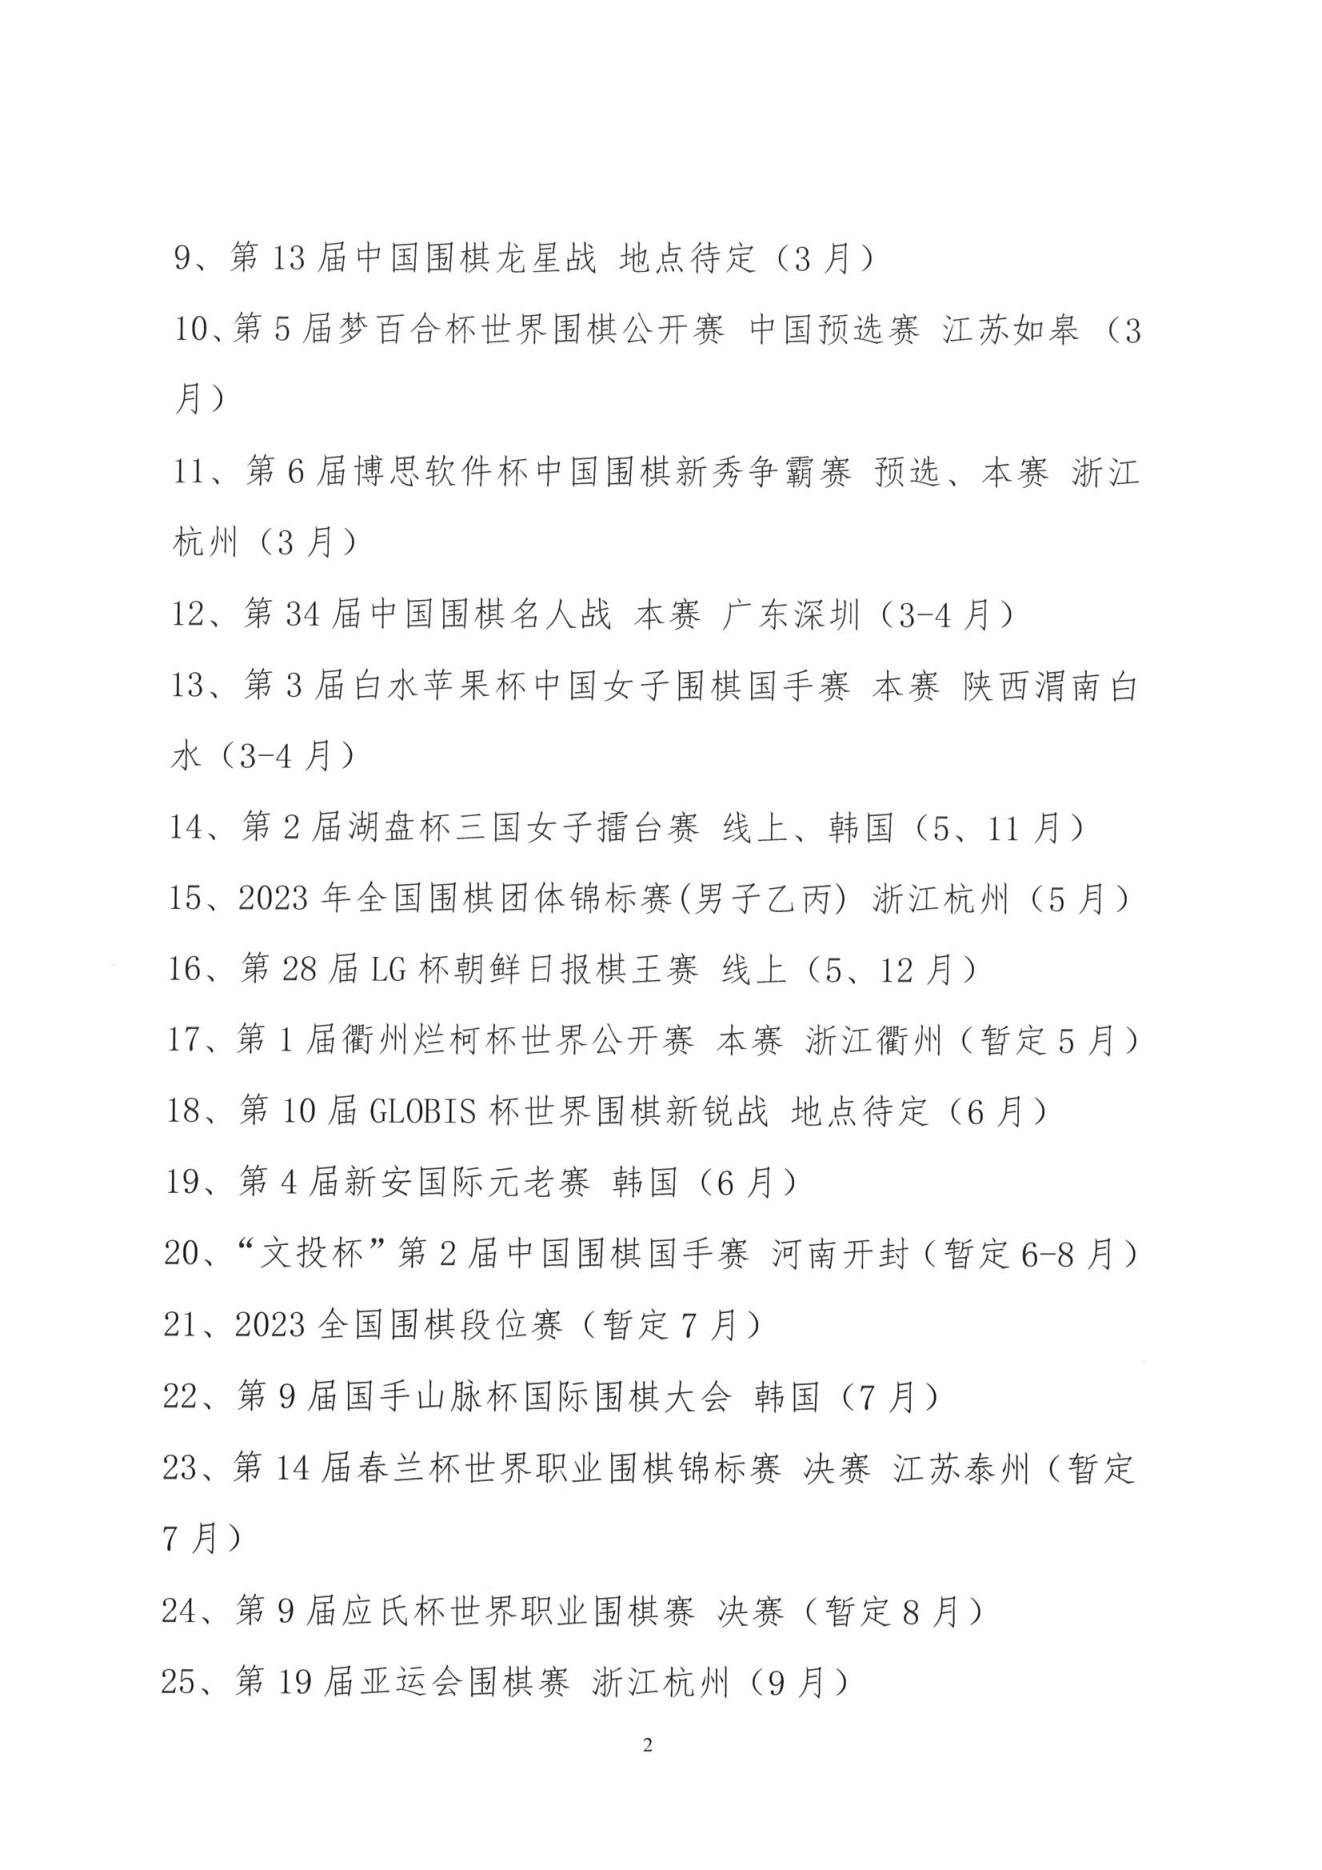 1_2023年中国围棋协会赛事计划项目.PDF_01.jpg